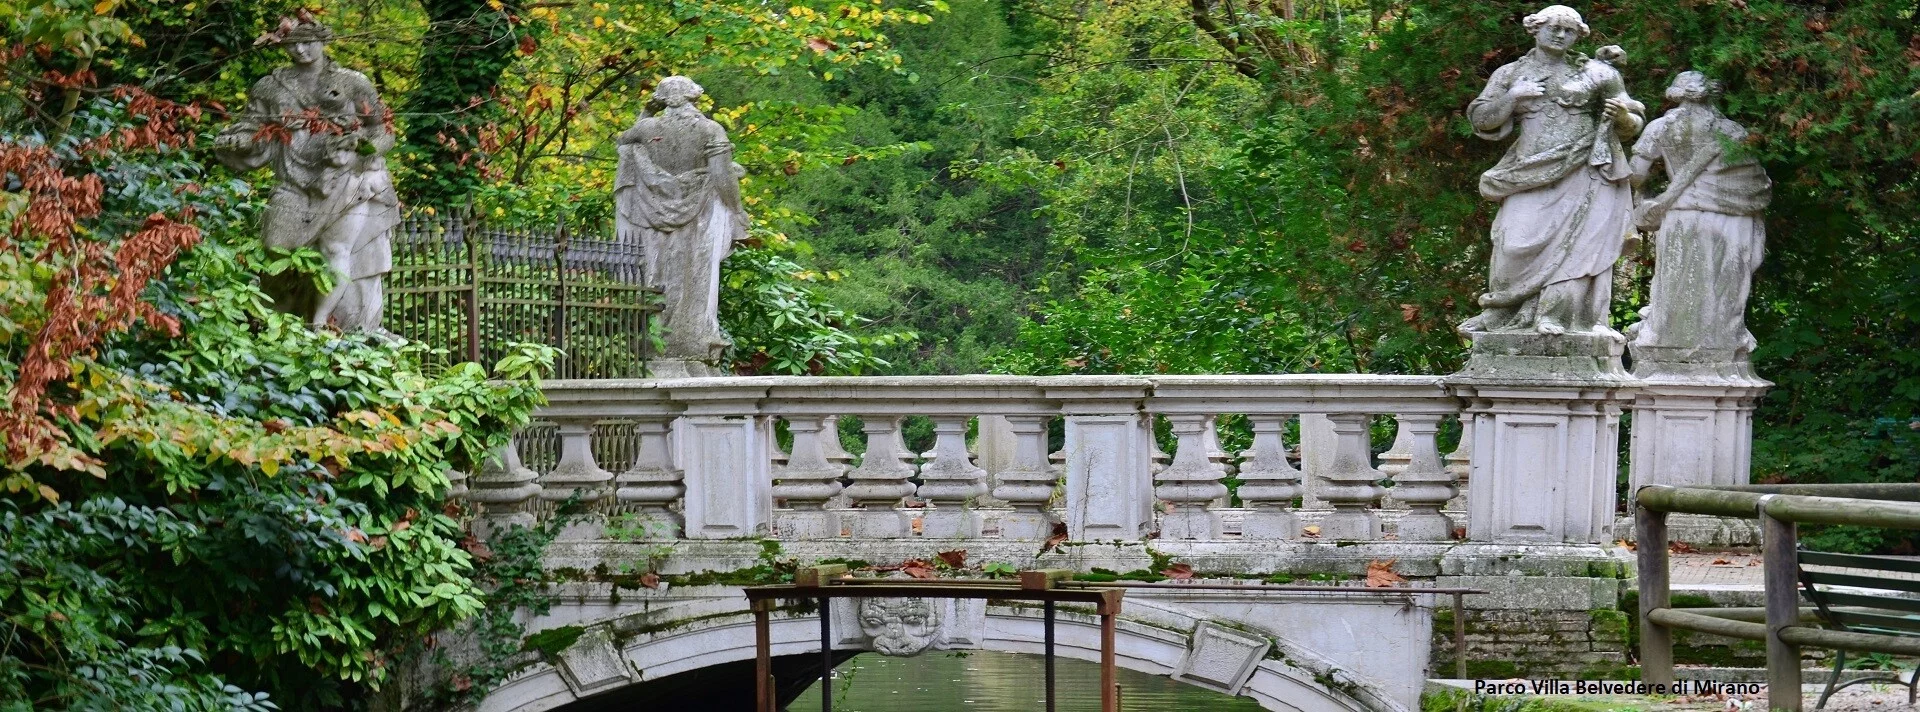 Parco Villa Belvedere di Mirano